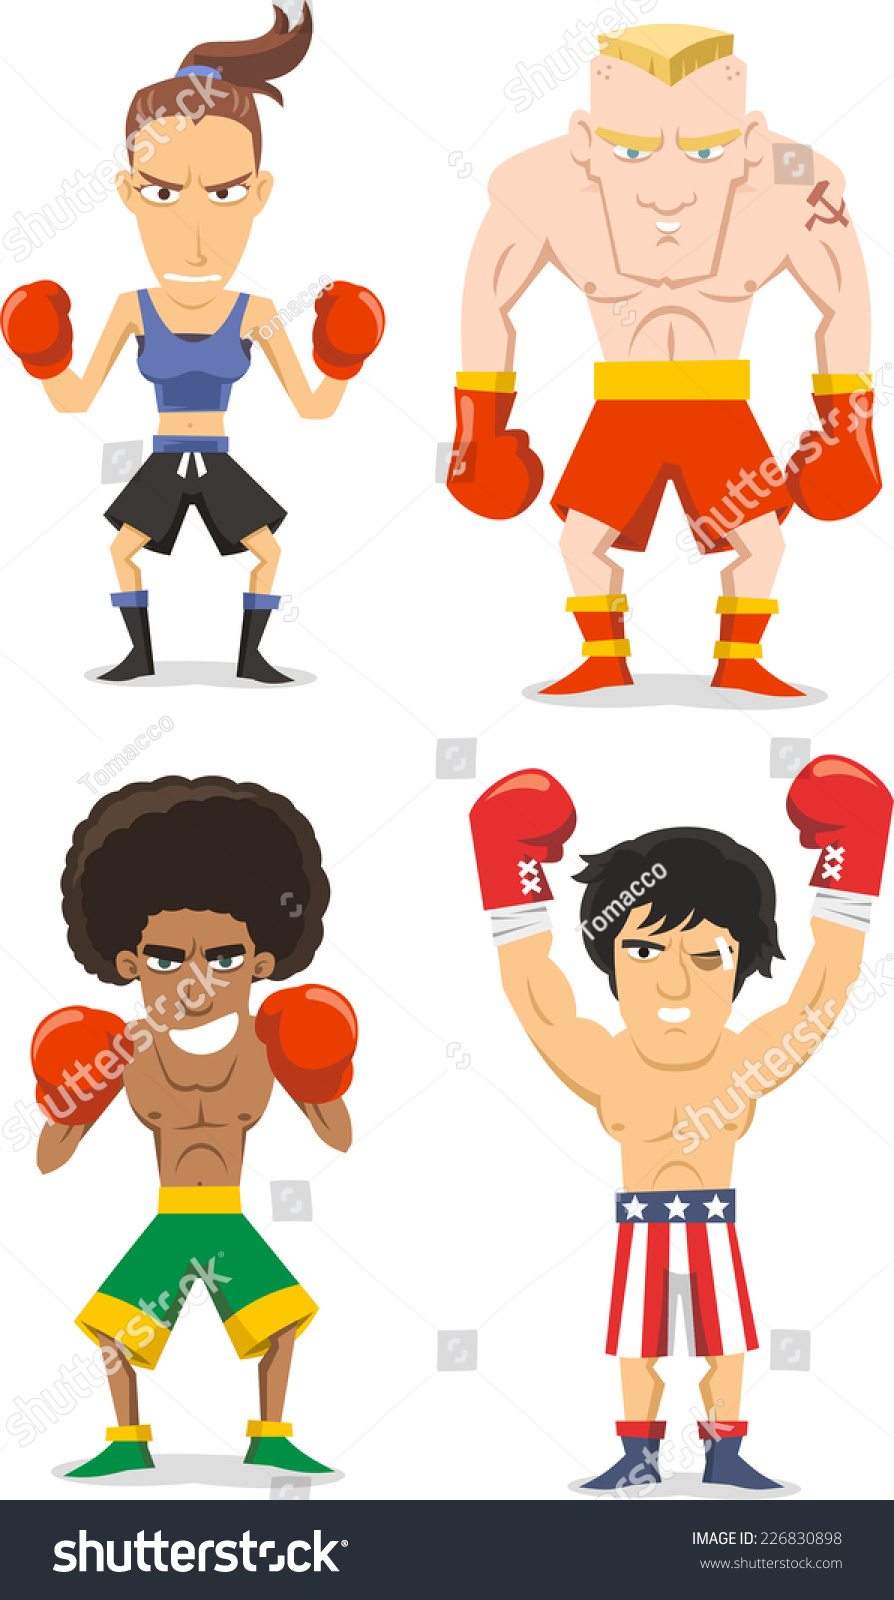 Boxer Cartoon Illustrations - 226830898 : Shutterstock